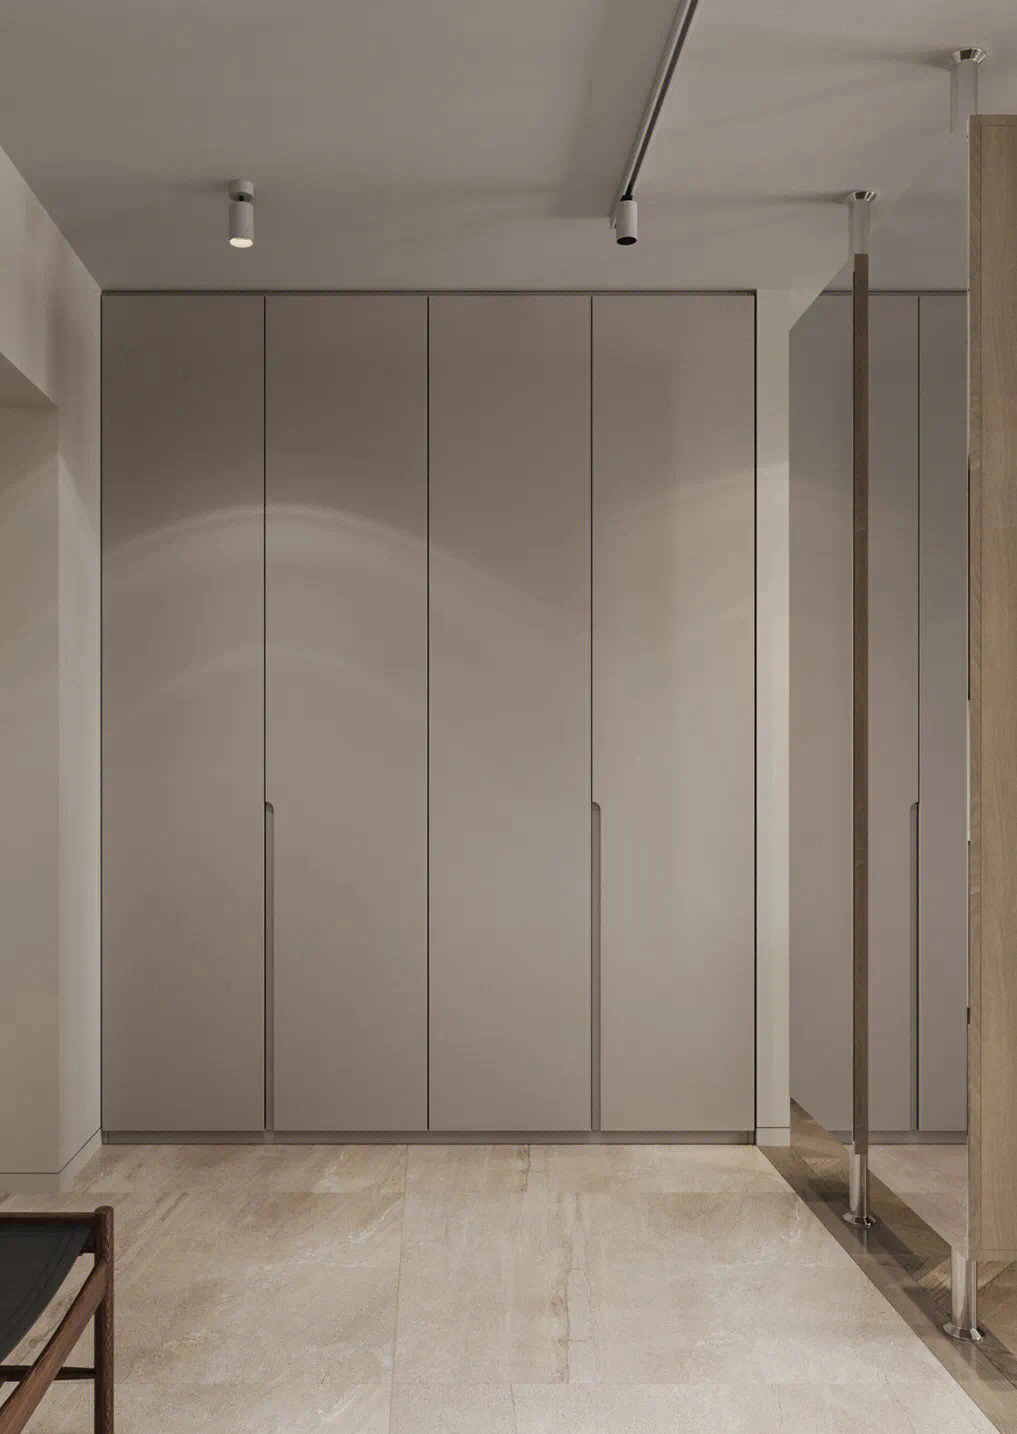 入墙式衣柜的缺点:一是不能够随意的移动;二是空间尺寸有限;三是安装